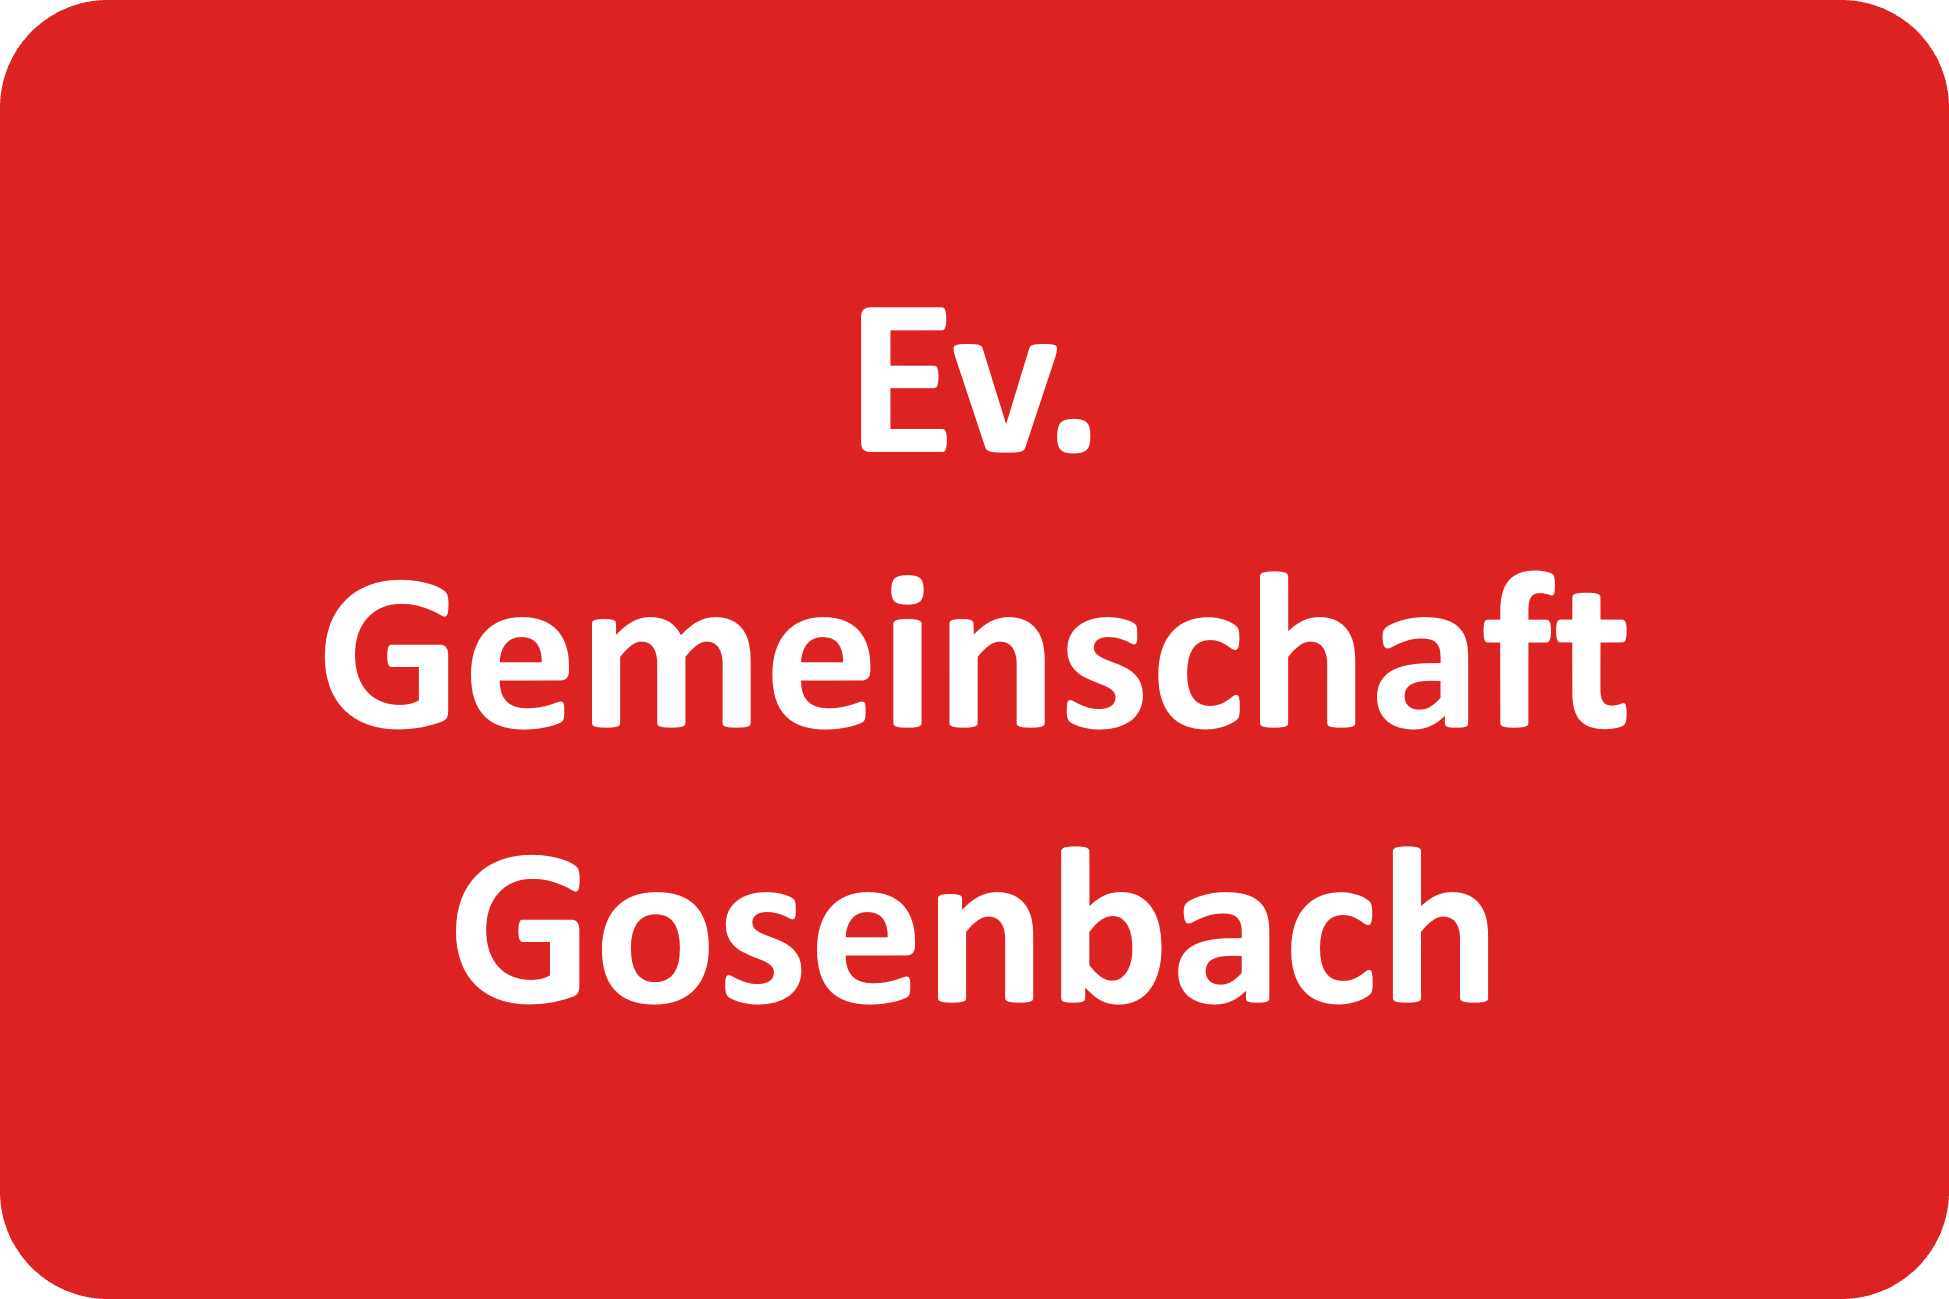 Ev. Gemeinschaft Gosenbach